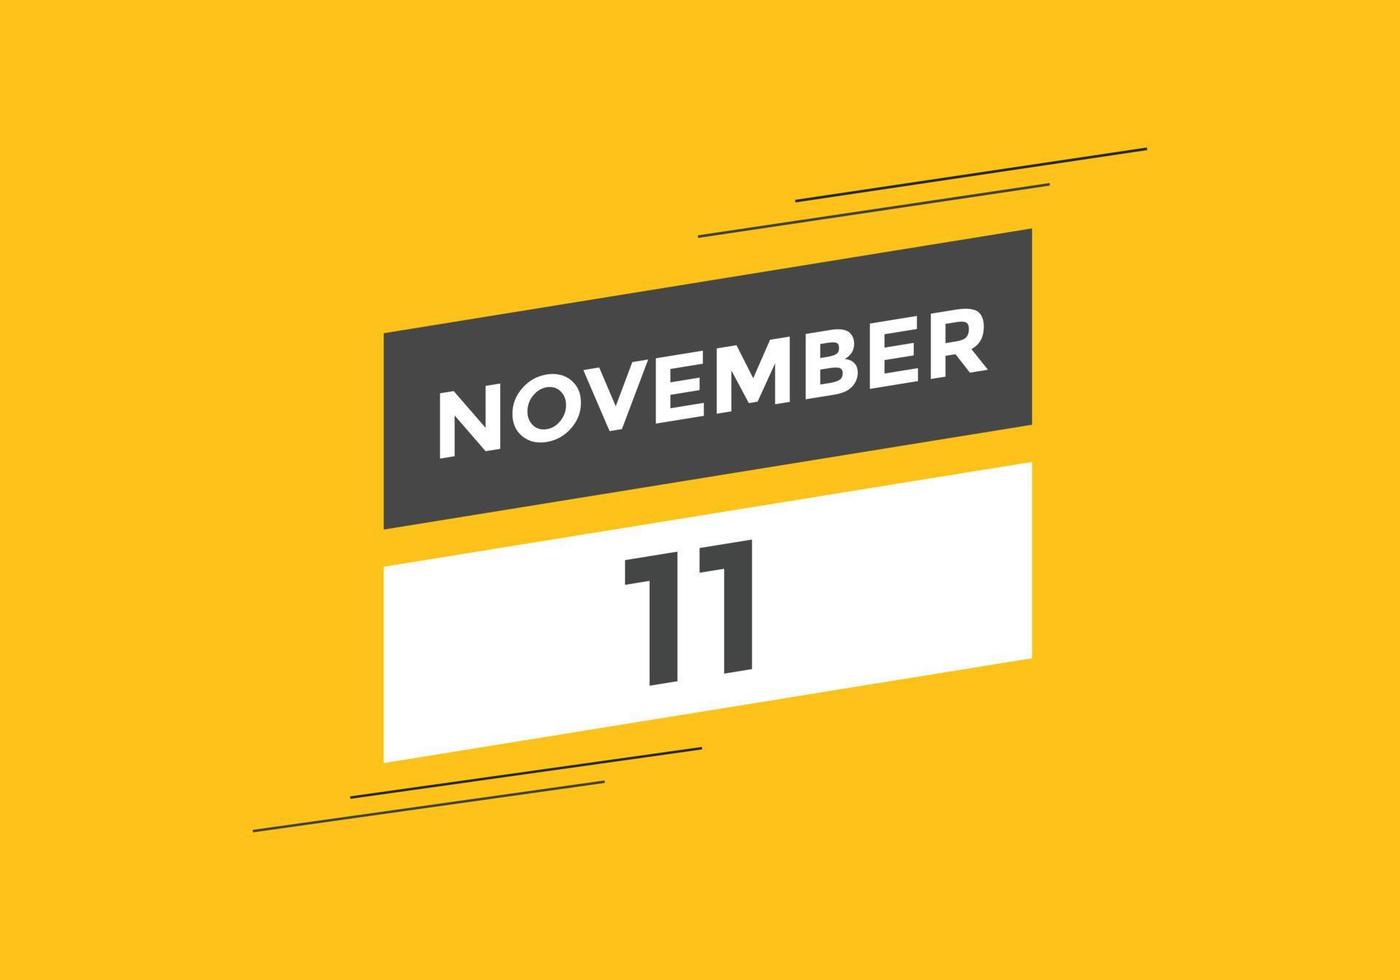 rappel du calendrier du 11 novembre. Modèle d'icône de calendrier quotidien du 11 novembre. modèle de conception d'icône calendrier 11 novembre. illustration vectorielle vecteur